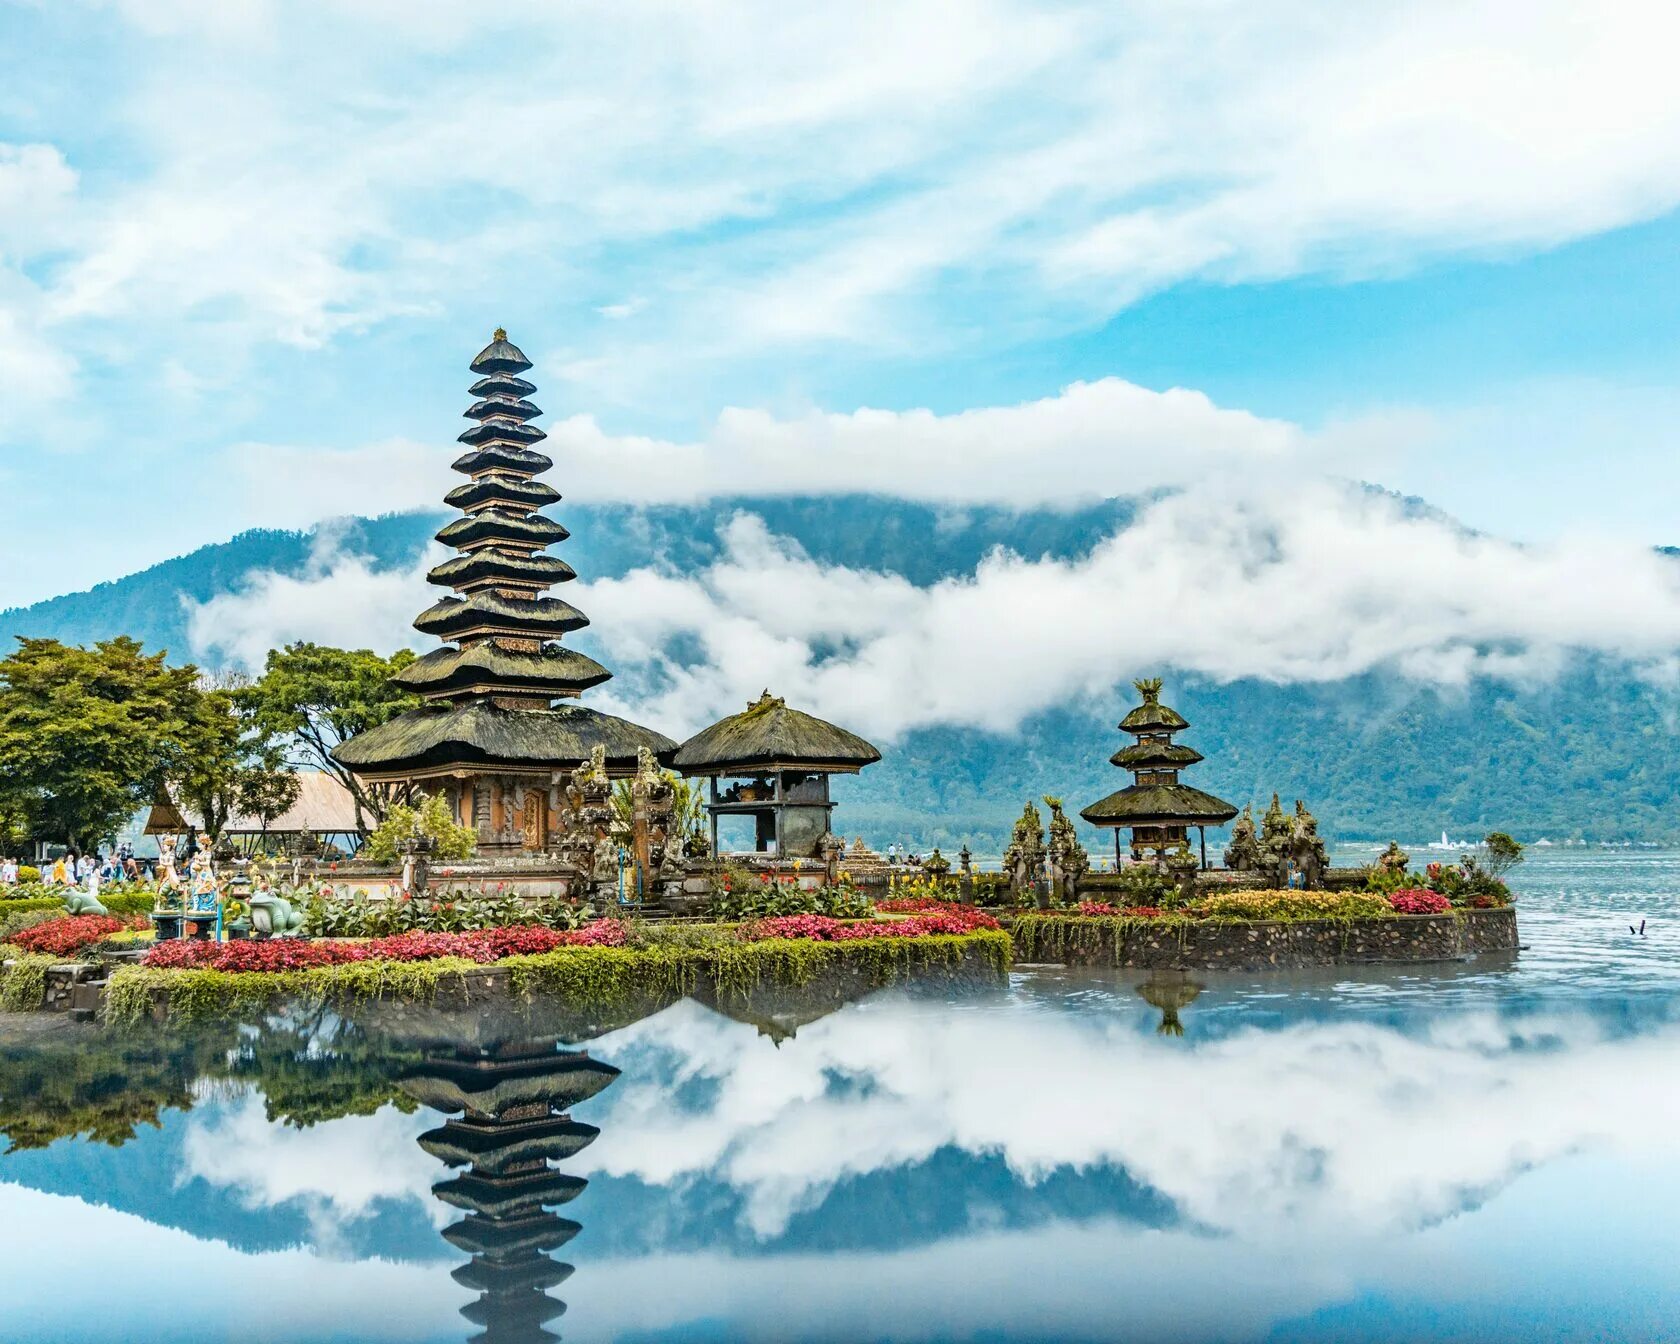 Площадь бали. Храм Пура улун дану. Индонезия Бали. Пура Бесаких, Бали, Индонезия. Бали (остров в малайском архипелаге).